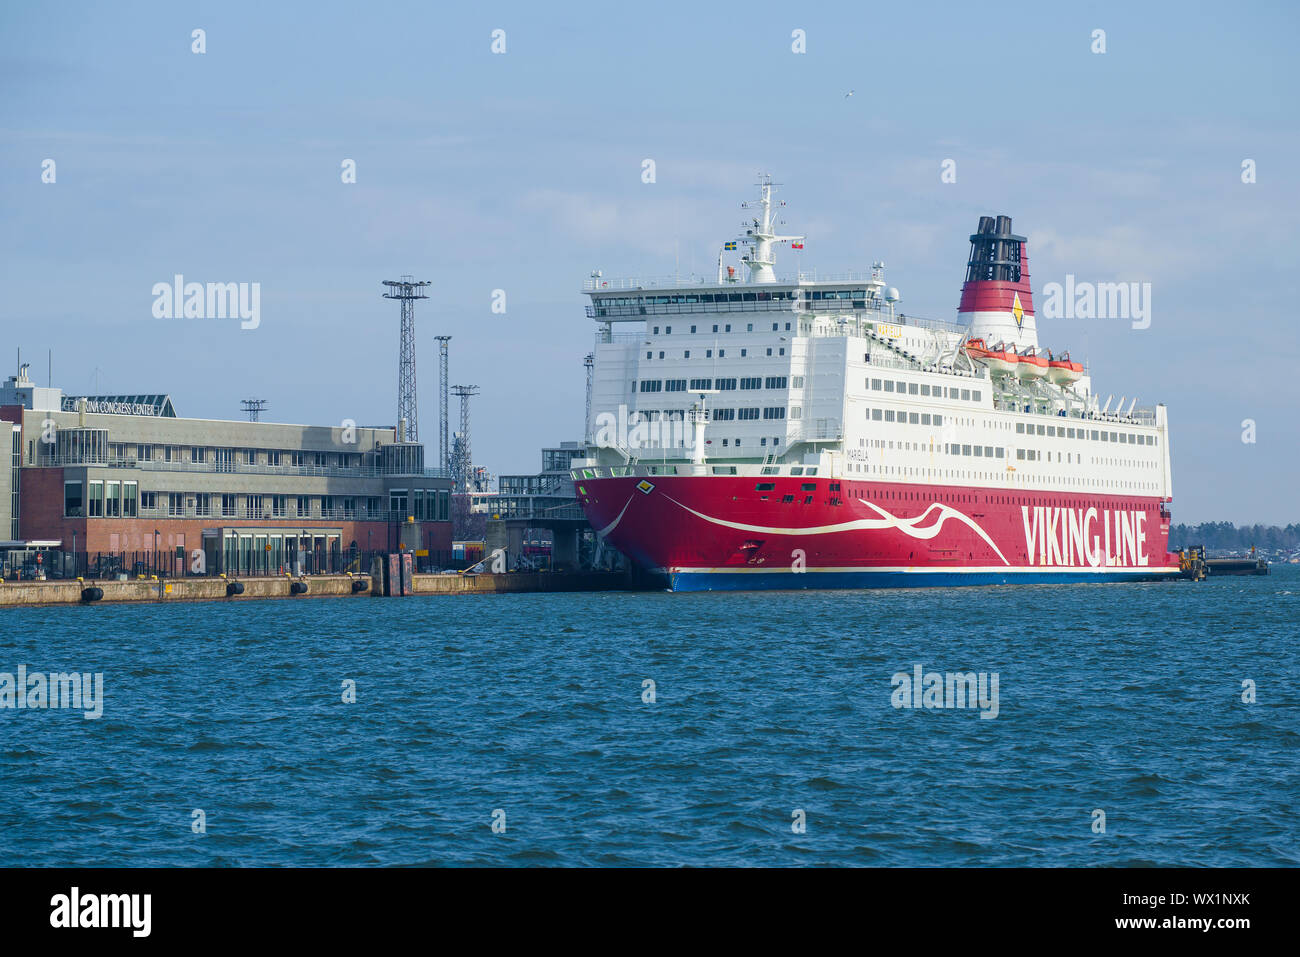 HELSINKI, FINLANDE - le 08 mars 2019 : Mariella croisière en mer à la ligne de ferry Viking terminal sur une journée ensoleillée Banque D'Images